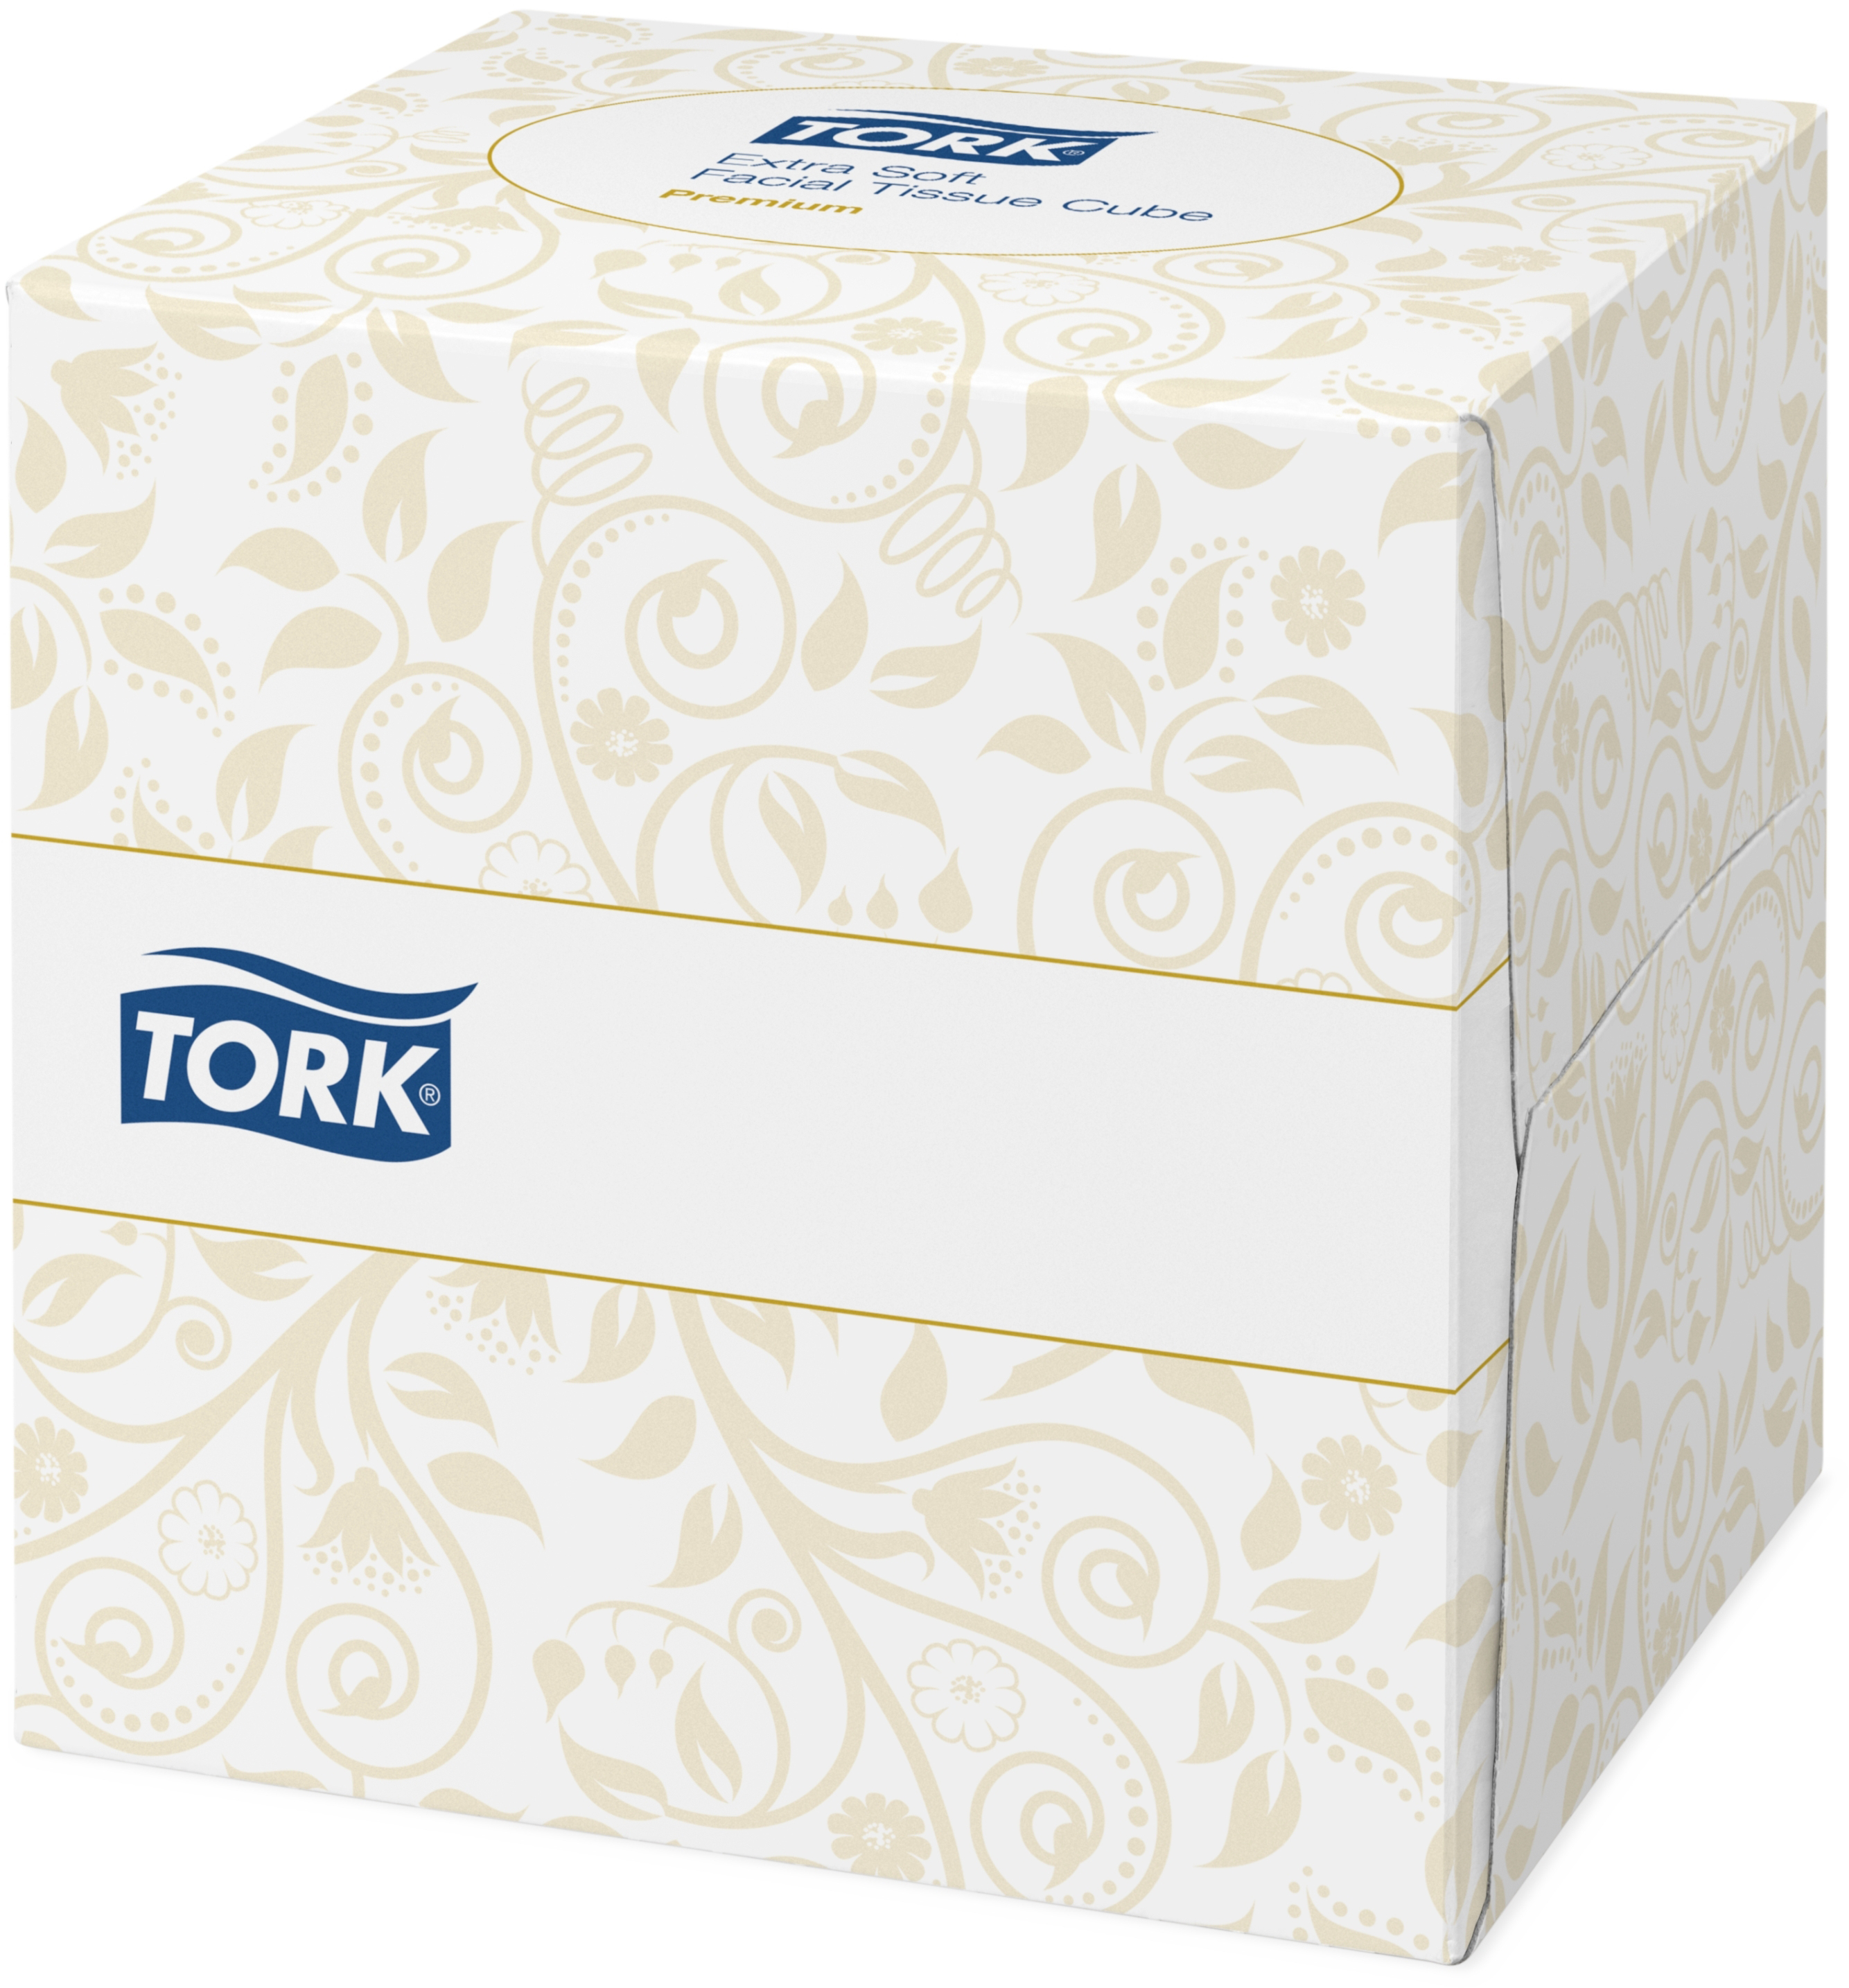 TORK Tissus cosmétiques 140278 blanc, 2 plis 100 feuilles